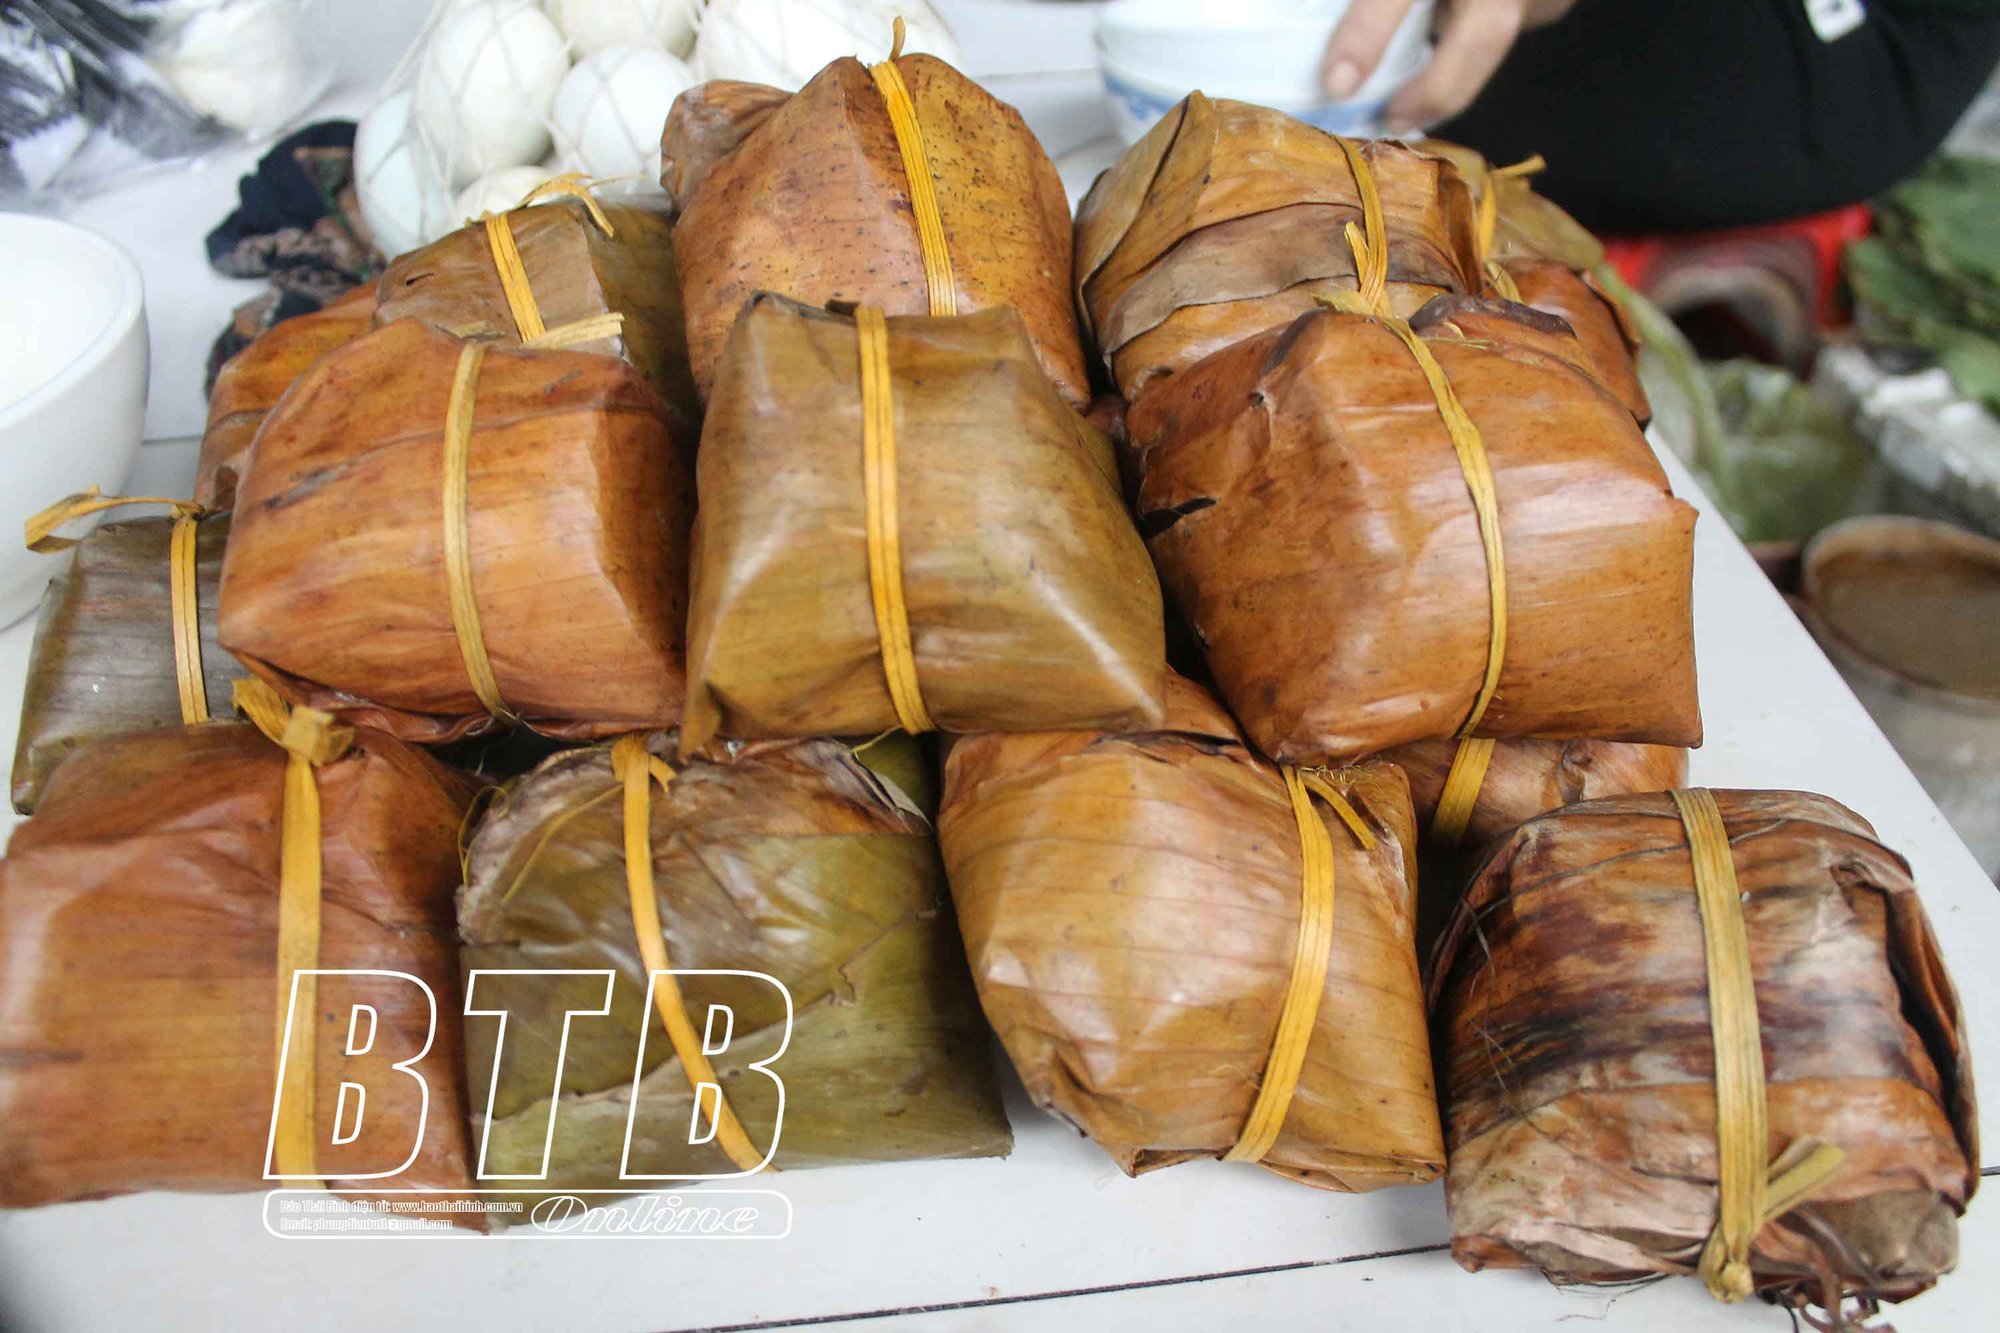 Chợ làng nổi tiếng đất Thái Bình, đi ngang qua thơm nức mùi bánh quê, chợt thèm cồn cào, vào ăn càng thèm hơn - Ảnh 6.